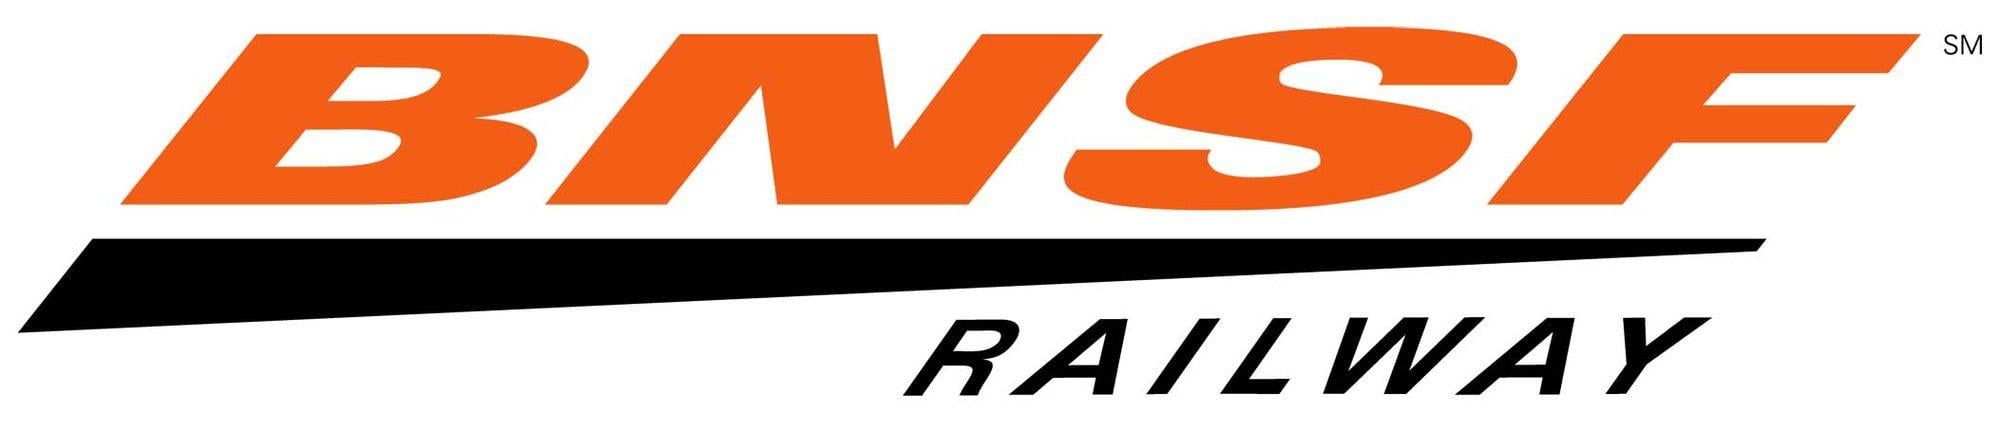 BNSF Swoosh Logo - BNSF Railway